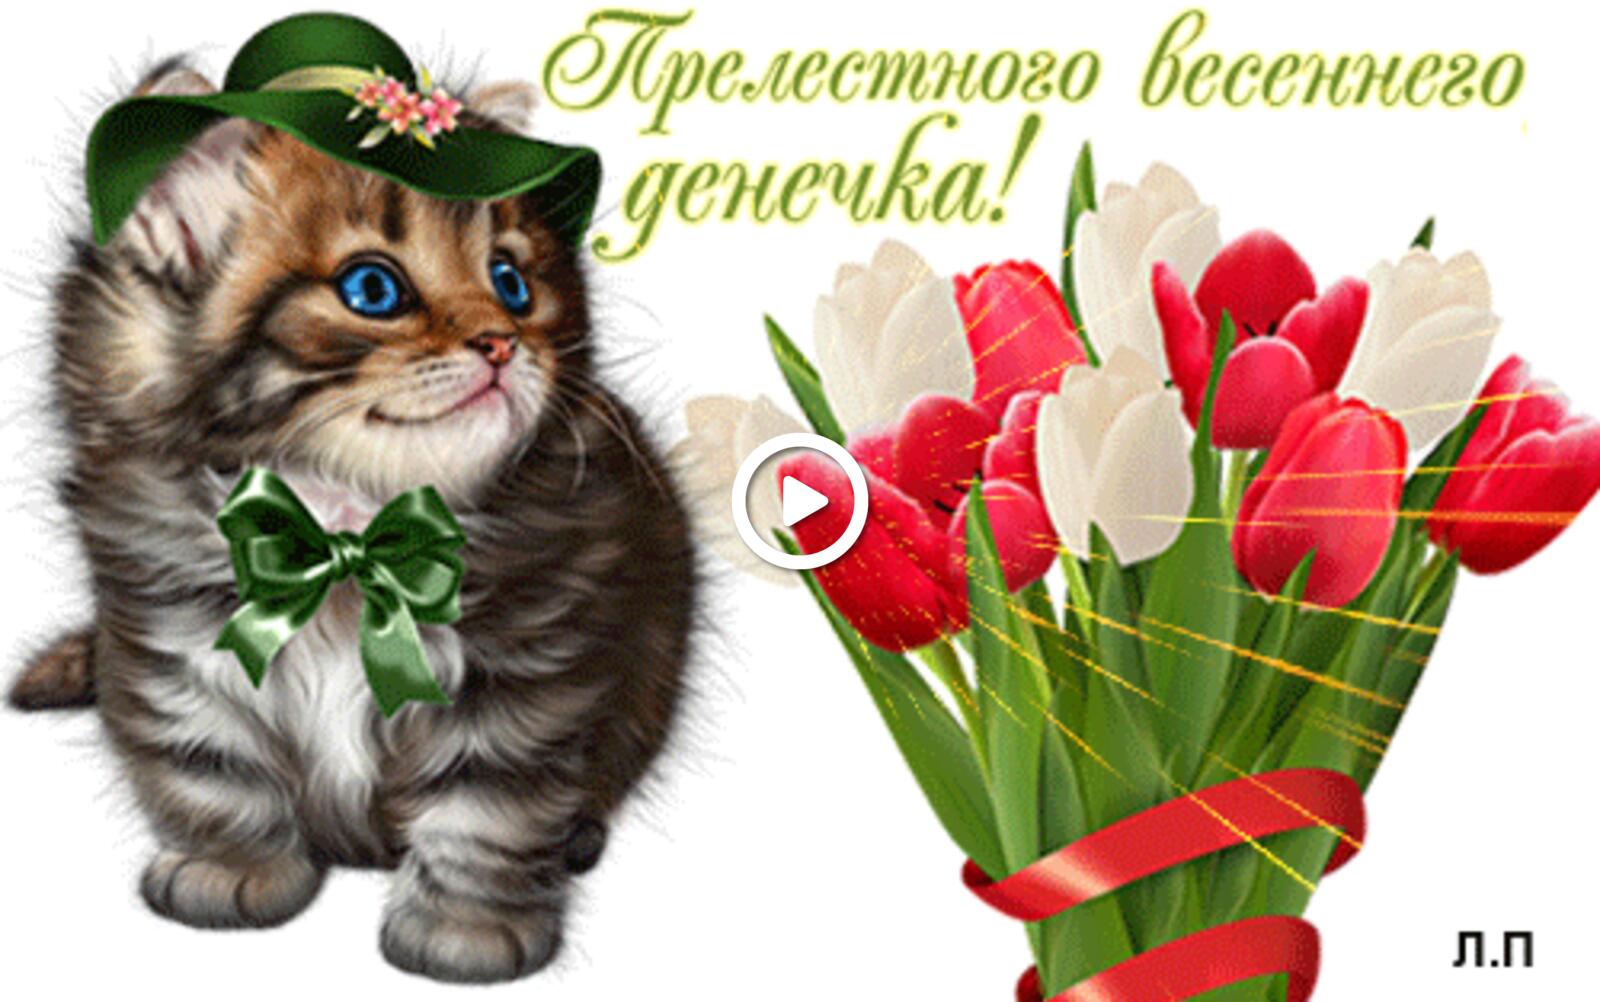 Открытка на тему нравится открытки весеннего настроения анимация котенок бесплатно